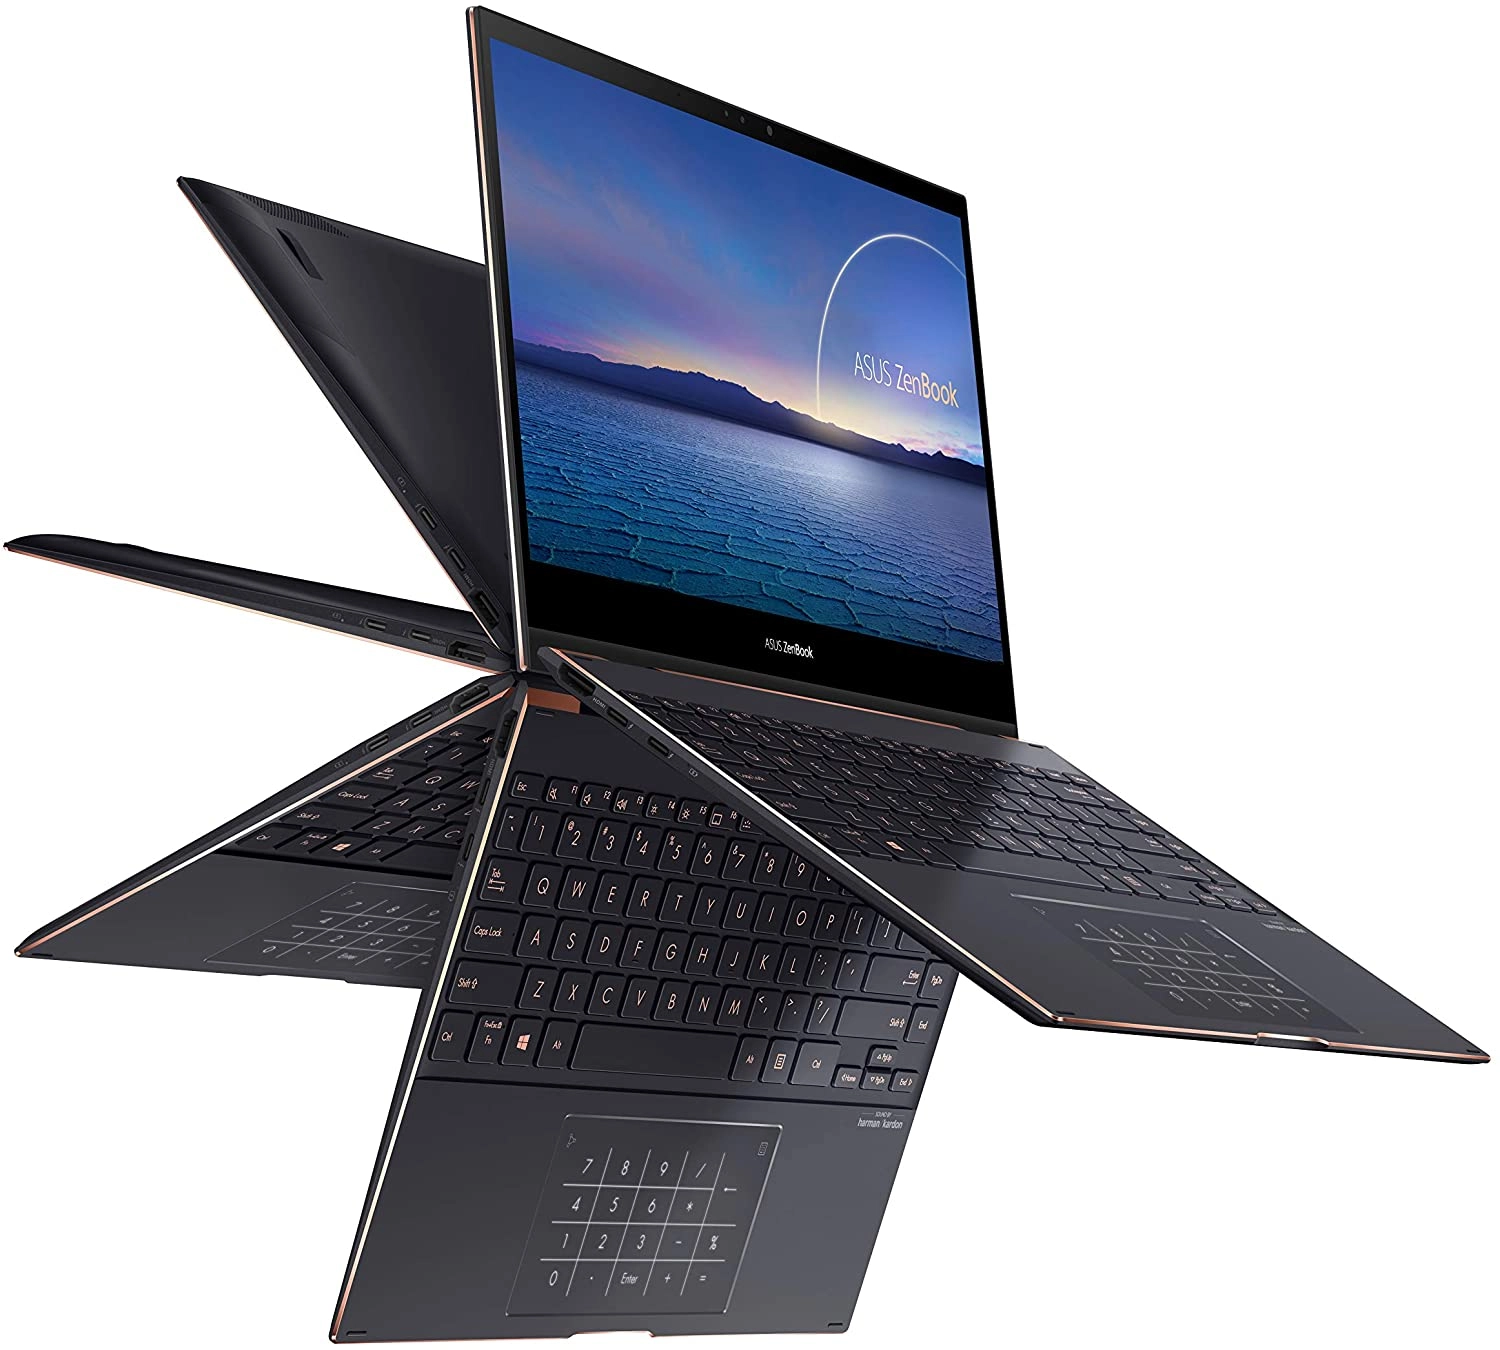 Asus ZenBook Flip S laptop image